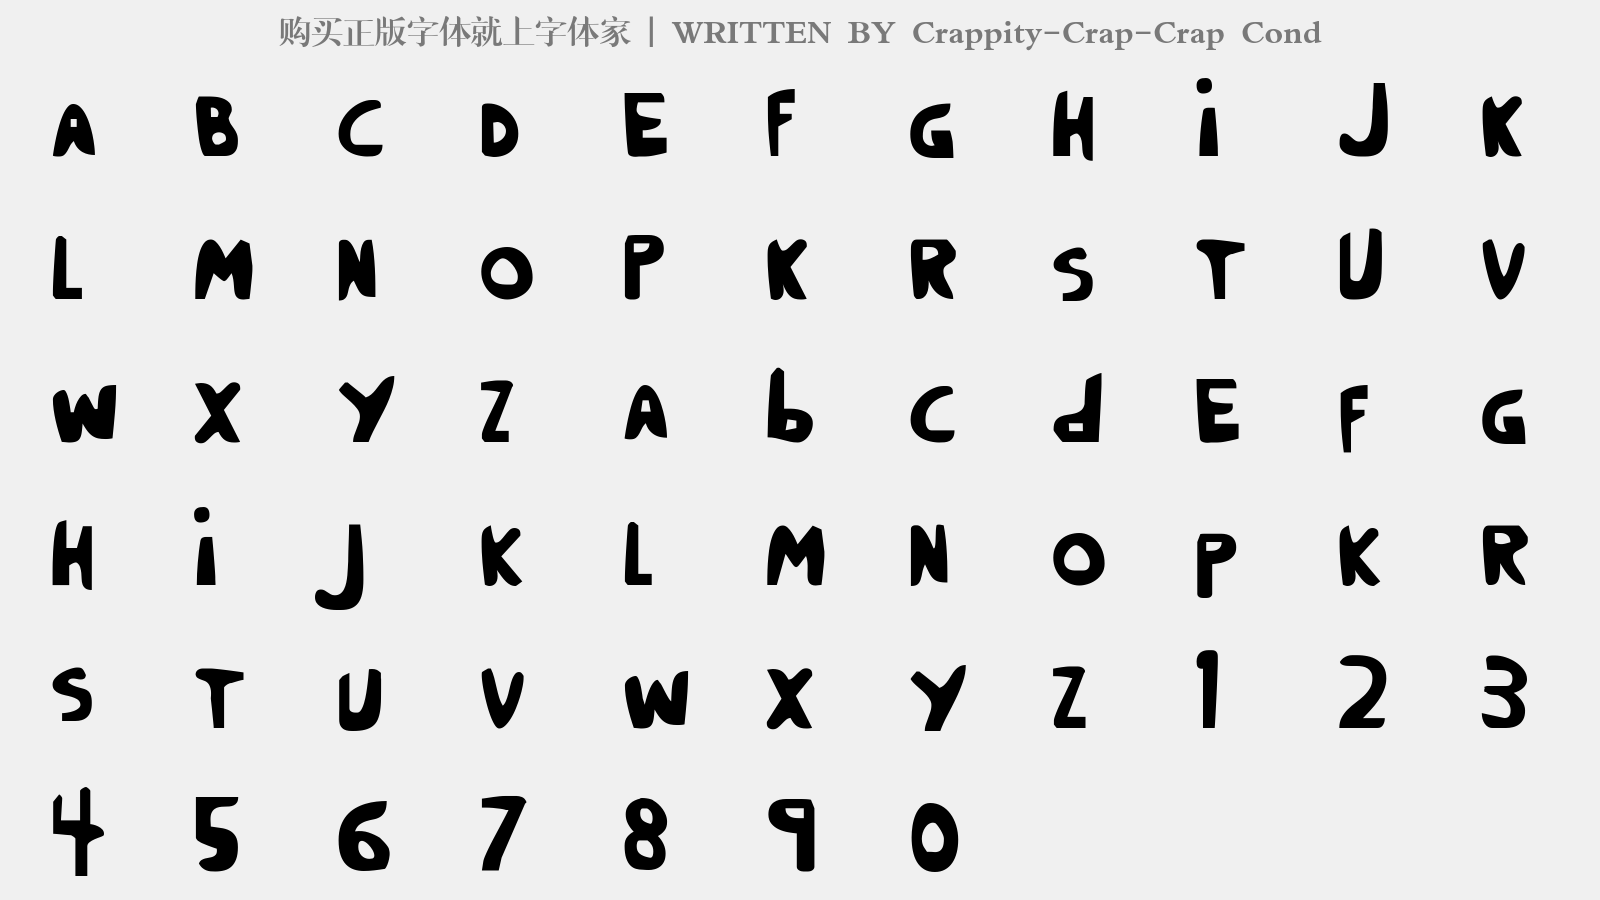 Crappity-Crap-Crap Cond - 大写字母/小写字母/数字